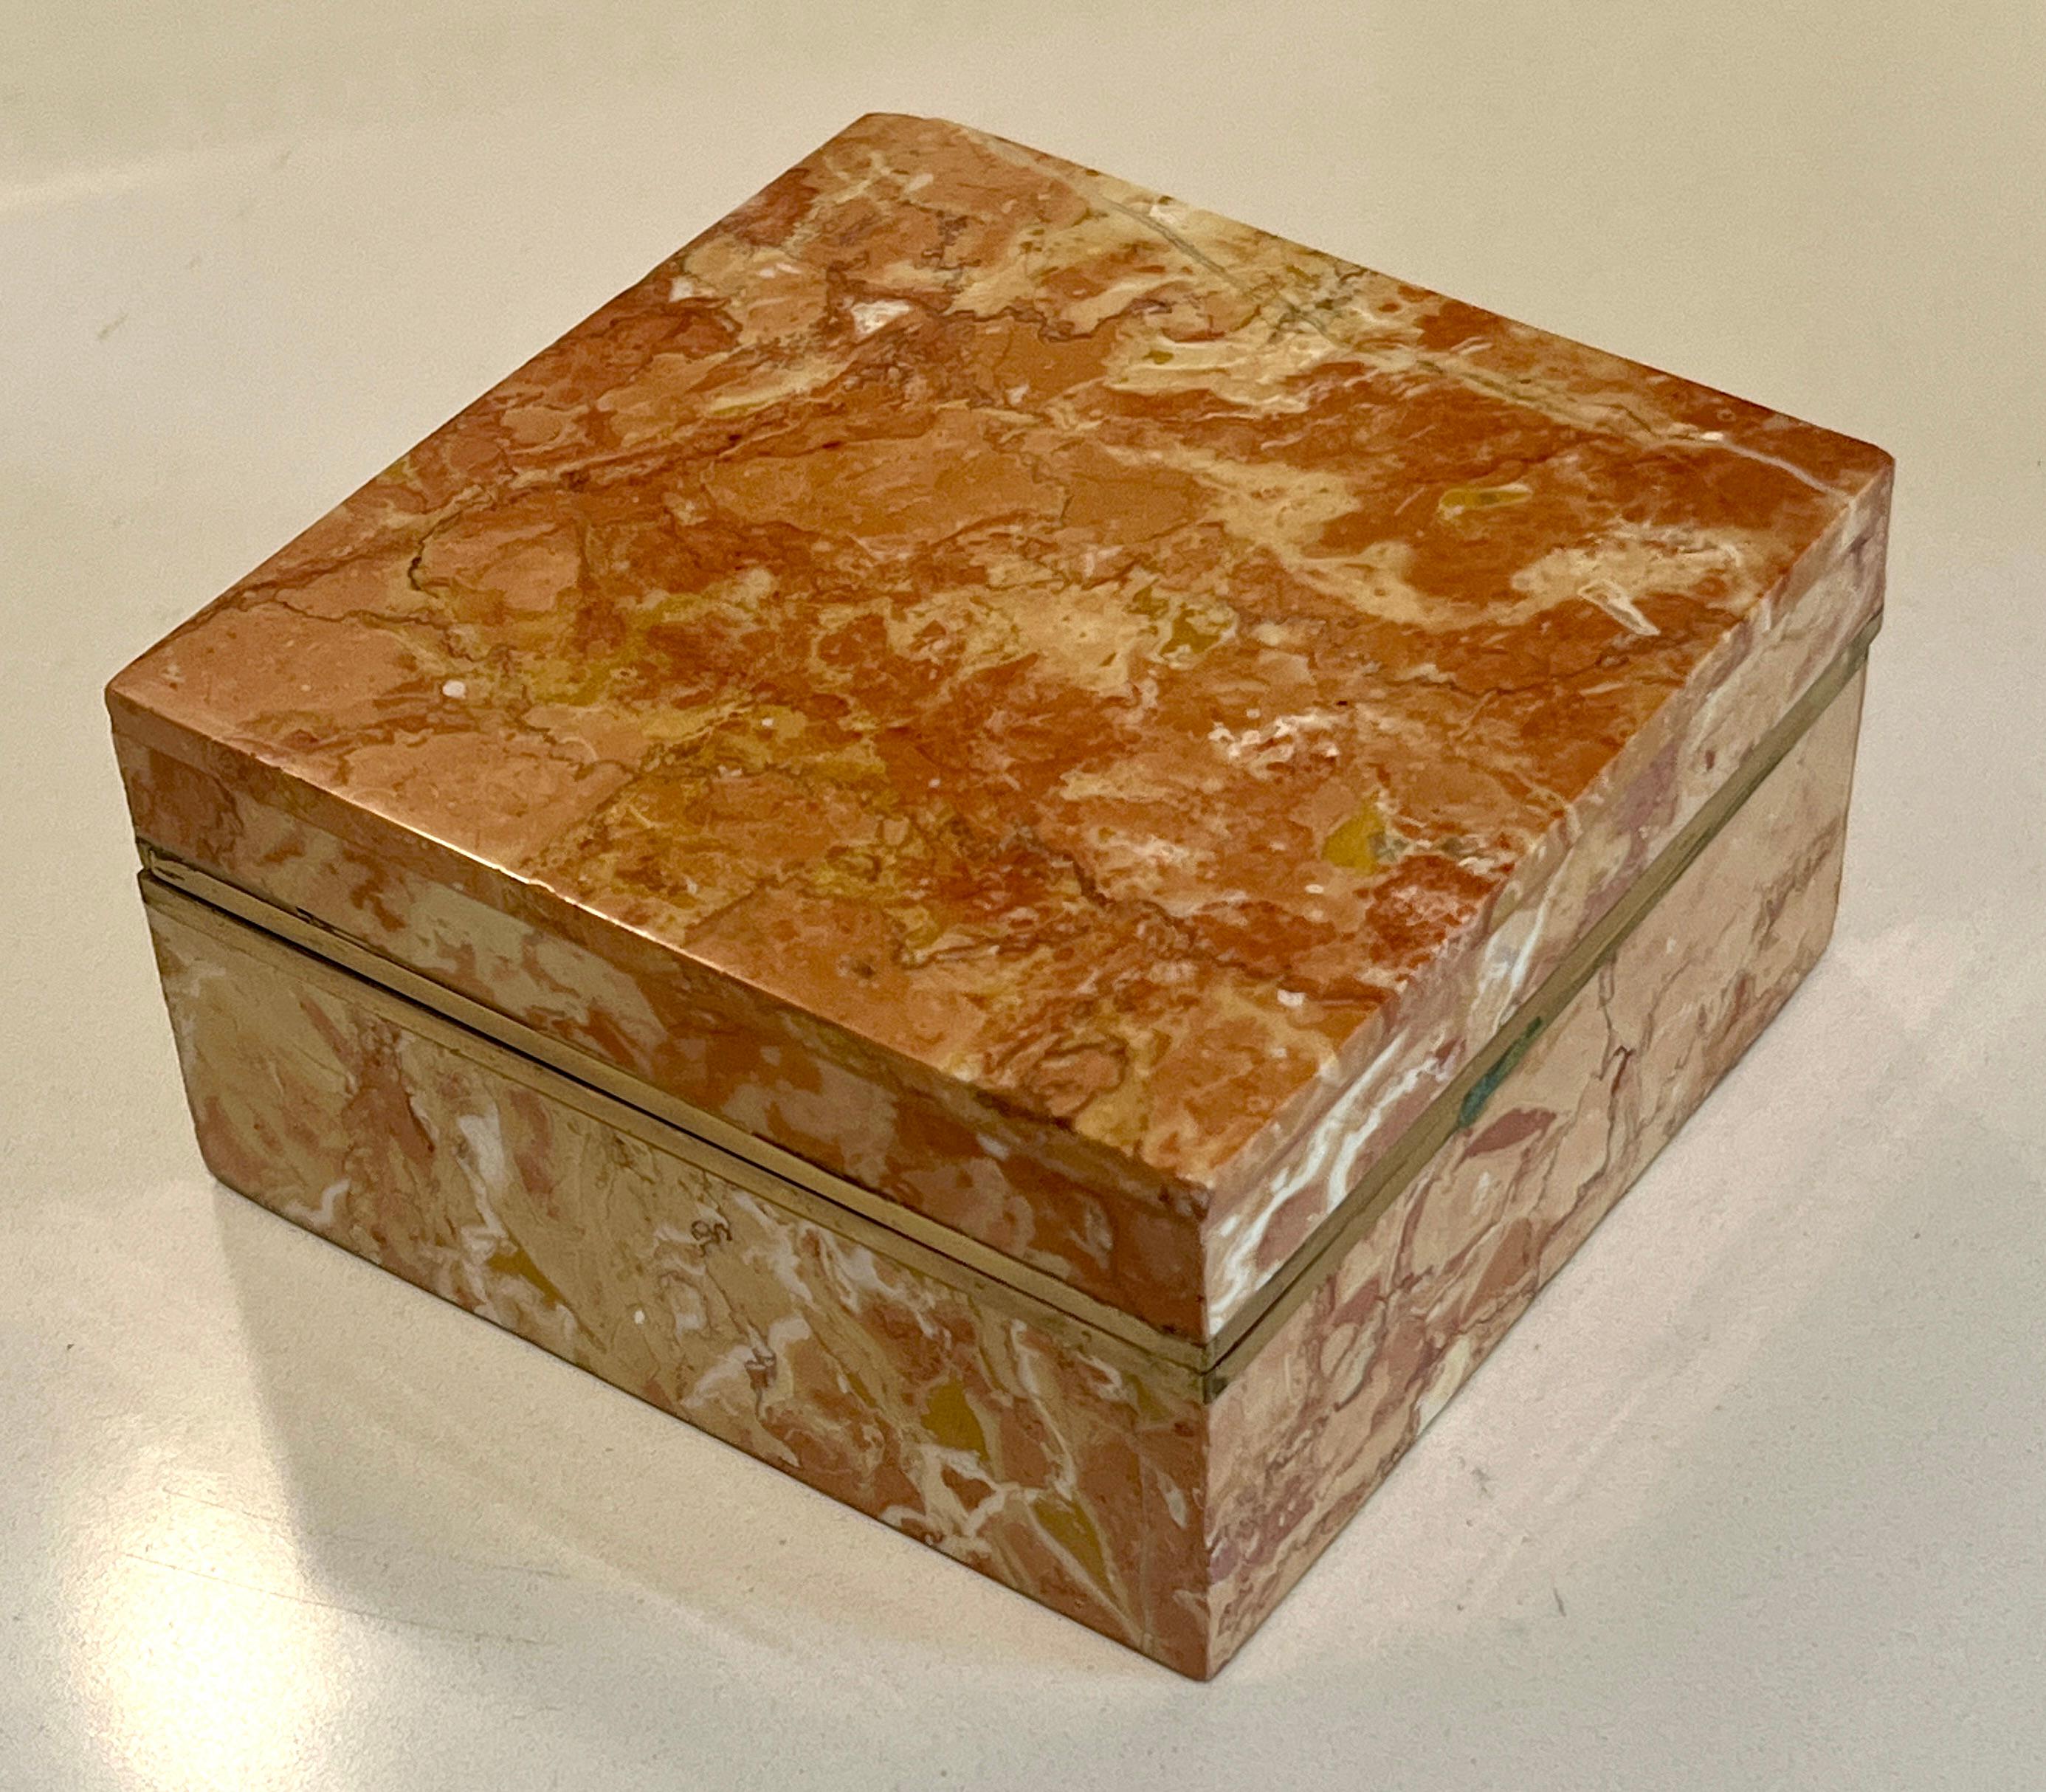 Boîte carrée en albâtre avec bande de laiton à la fermeture.  Le couvercle n'est pas articulé mais se détache complètement pour révéler un intérieur en velours brun.   L'albâtre de couleur ambre ou or est une couleur magnifique.

Un complément à